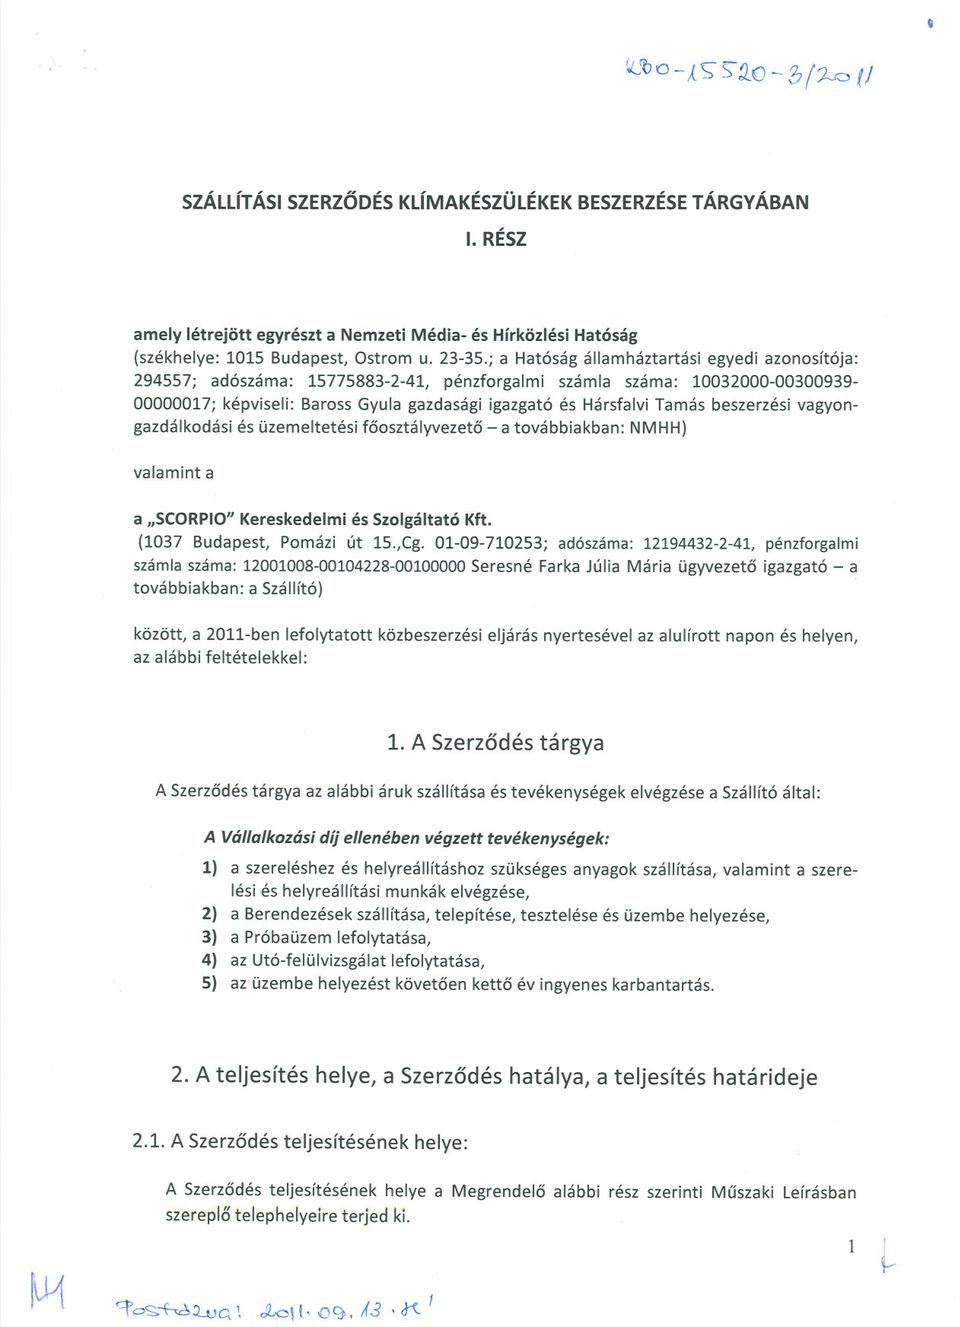 beszerzési vagyongazdálkodási és üzemeltetési foosztályvezeto - a továbbiakban: NMHH) valamint a a "SCORPIO"Kereskedelmi és Szolgáltató Kft. (1037 Budapest, Pomázi út 15.,Cg.